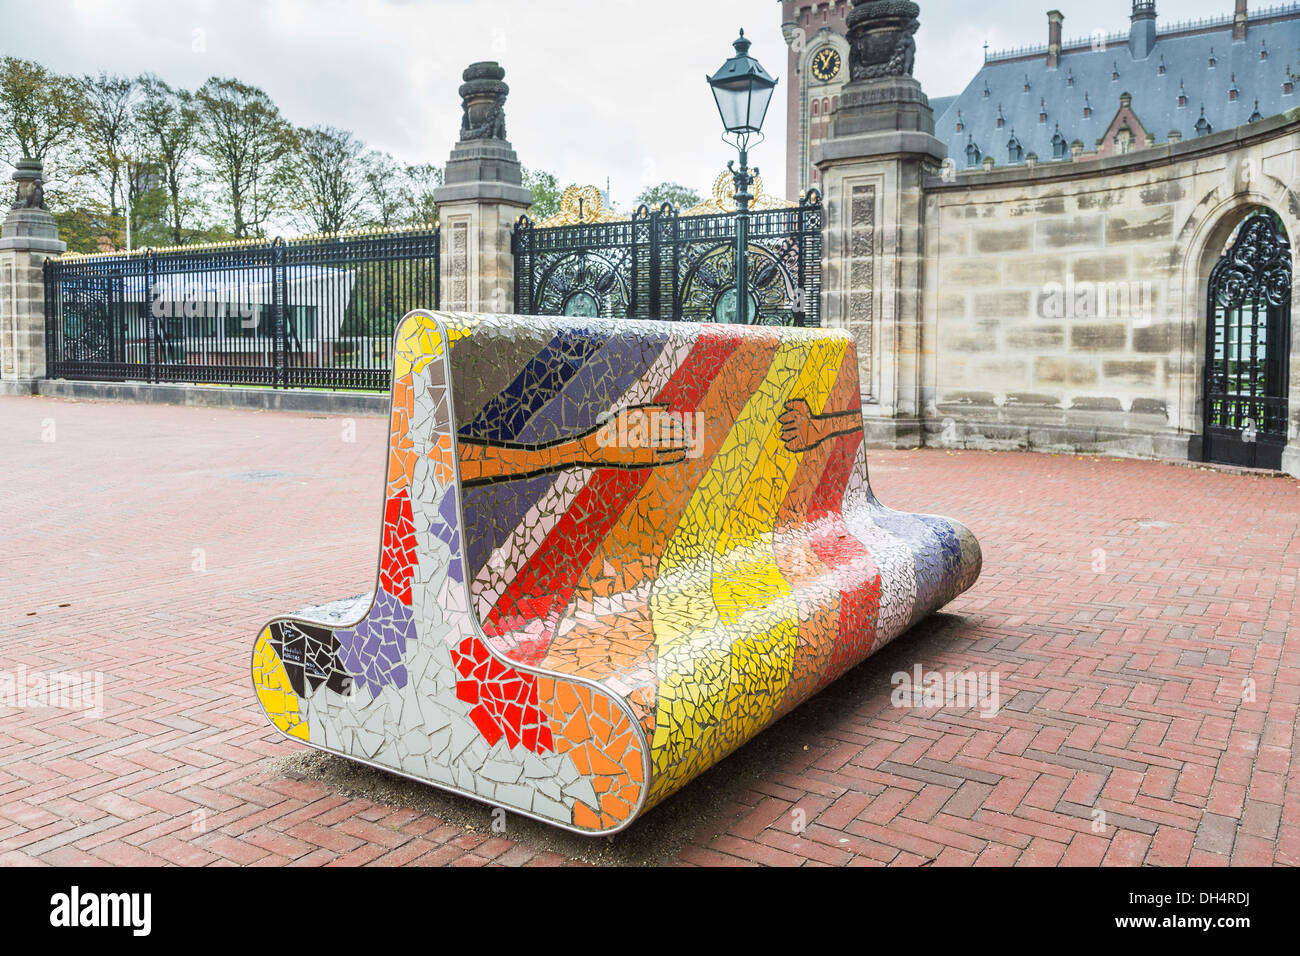 Mosaïque de couleurs vives de la banquette en pierre symbolisant l'amitié à l'extérieur du palais de la paix, siège de la Cour internationale de Justice, La Haye, Hollande Banque D'Images